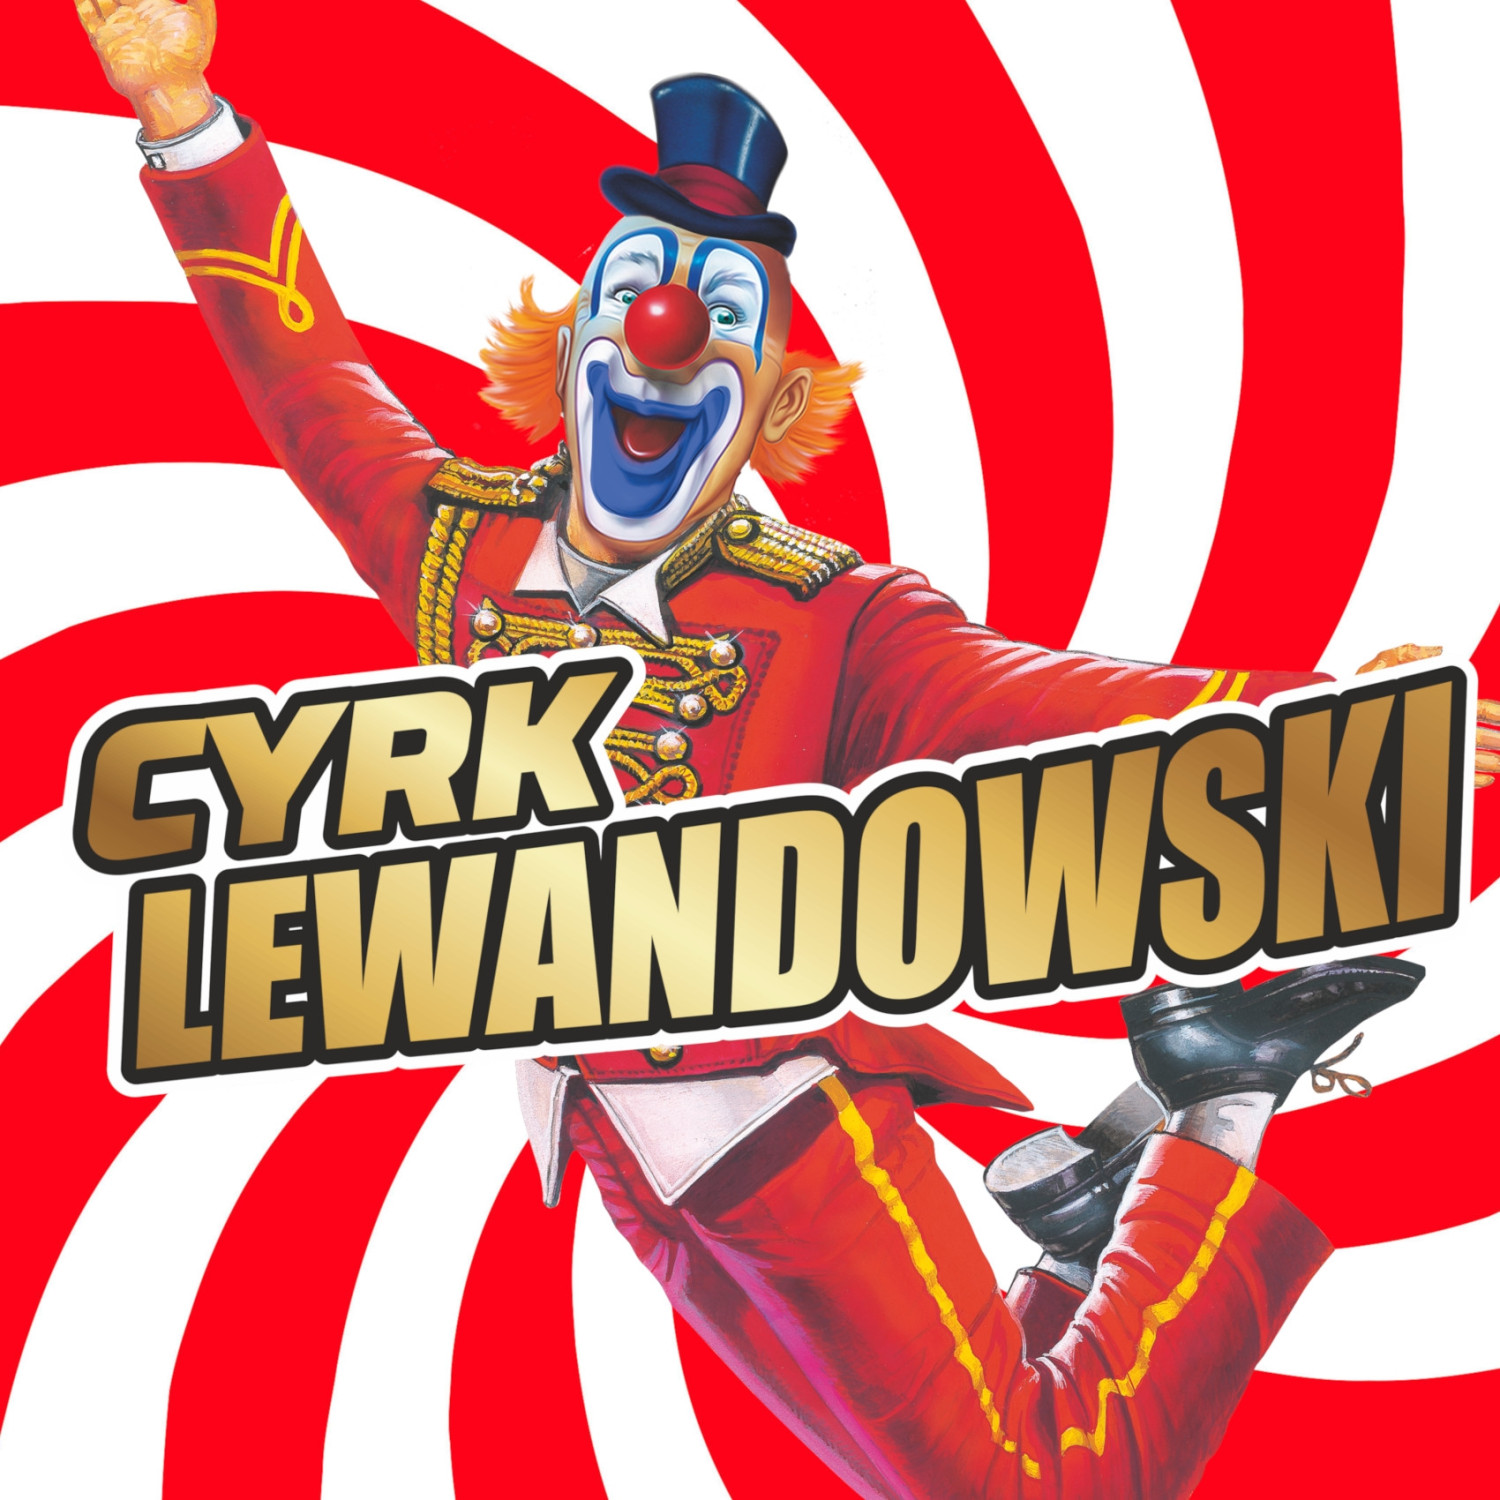 Na przybyłych czekać będzie mnóstwo magicznych numerów - Cyrk Lewandowski